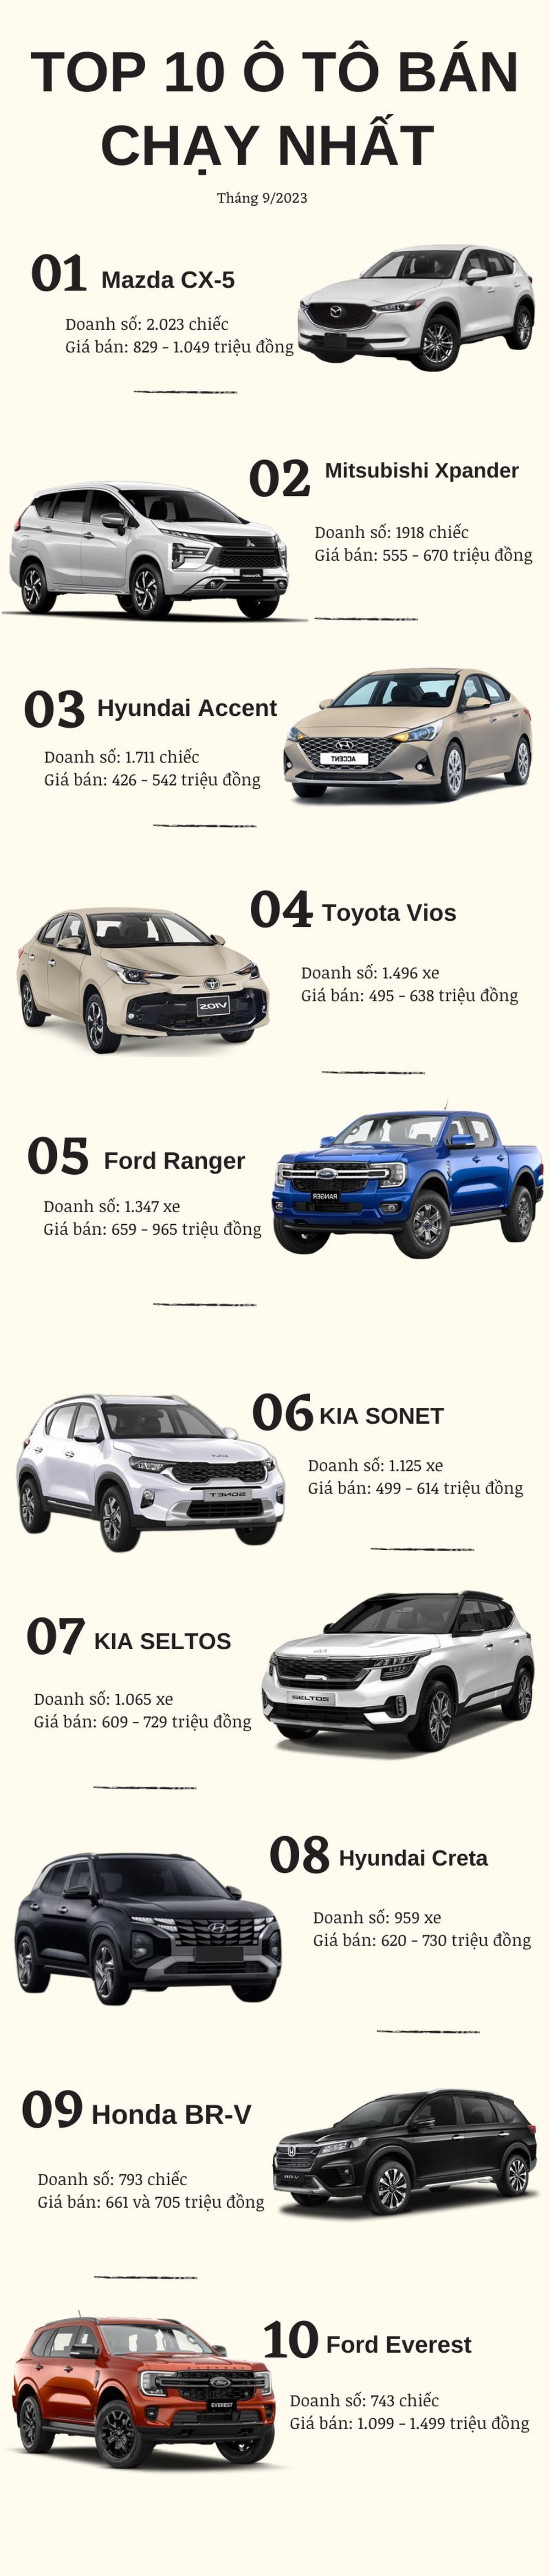 Top 10 ô tô bán chạy nhất tháng 9/2023: Ngôi vua dễ đoán, 1 xe ‘lạ’ bất ngờ xuất hiện - Ảnh 2.